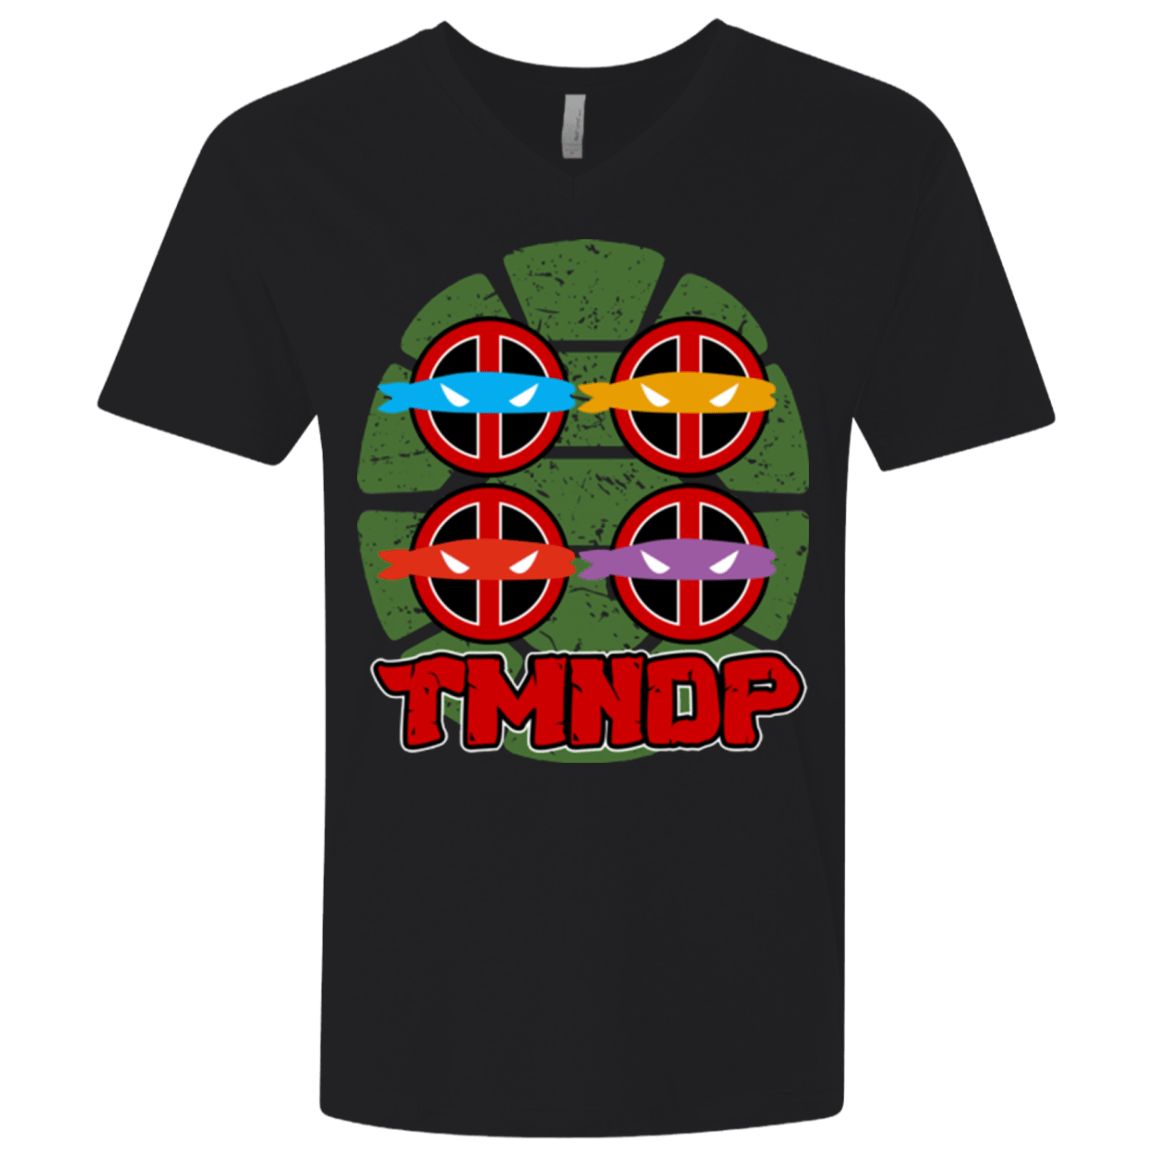 T-Shirts Black / X-Small TMNDP Men's Premium V-Neck